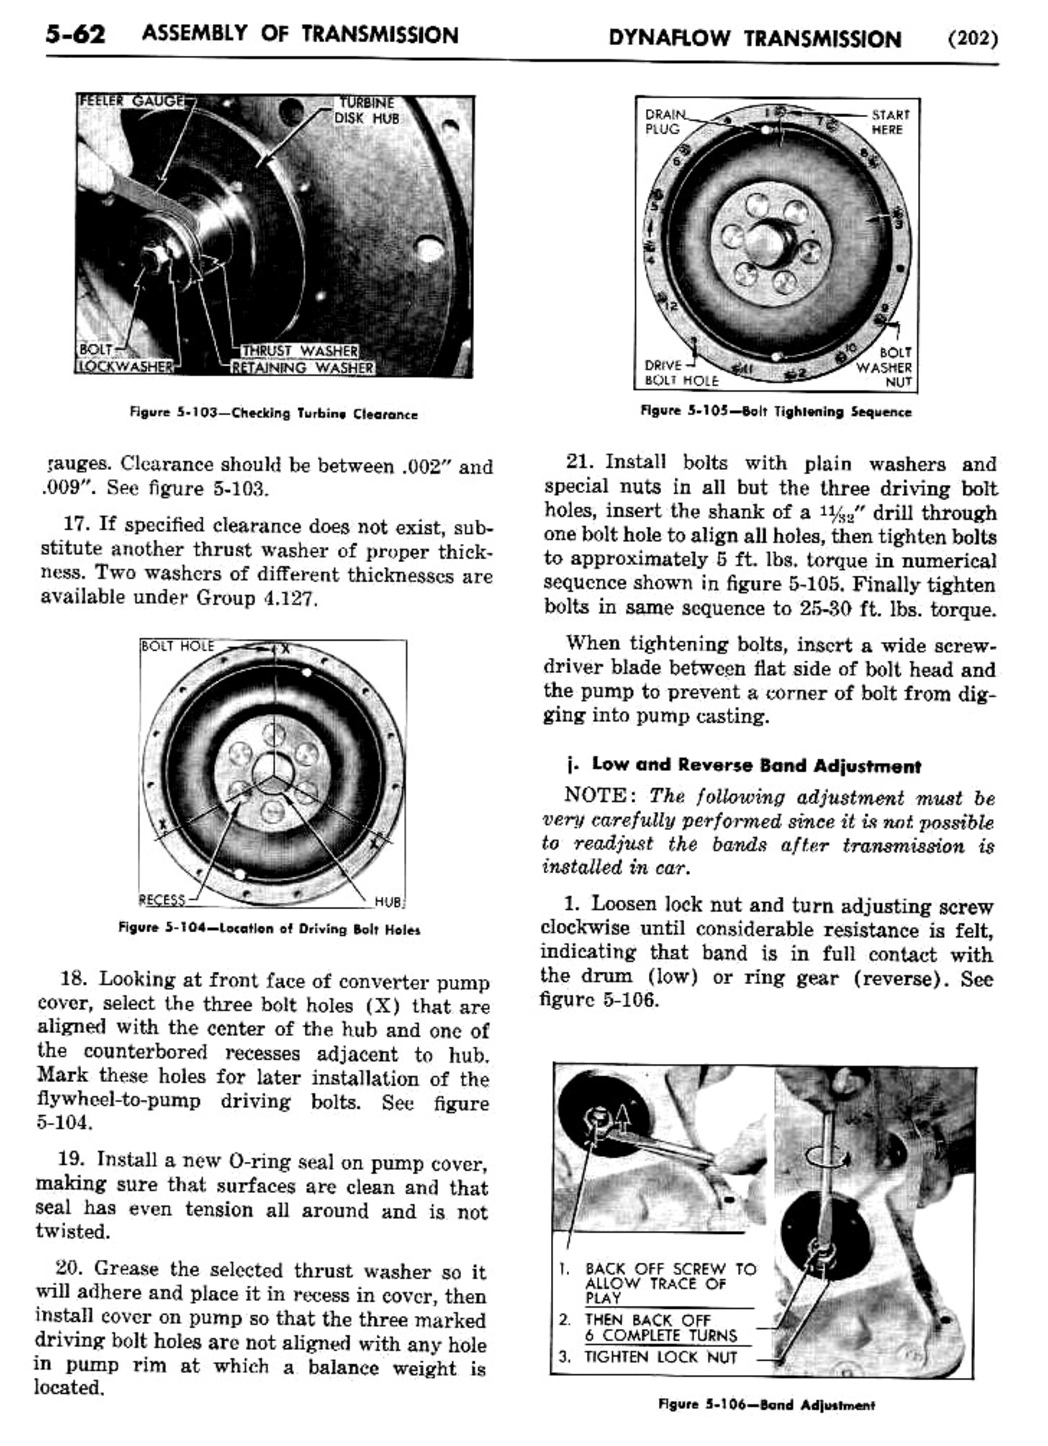 n_06 1955 Buick Shop Manual - Dynaflow-062-062.jpg